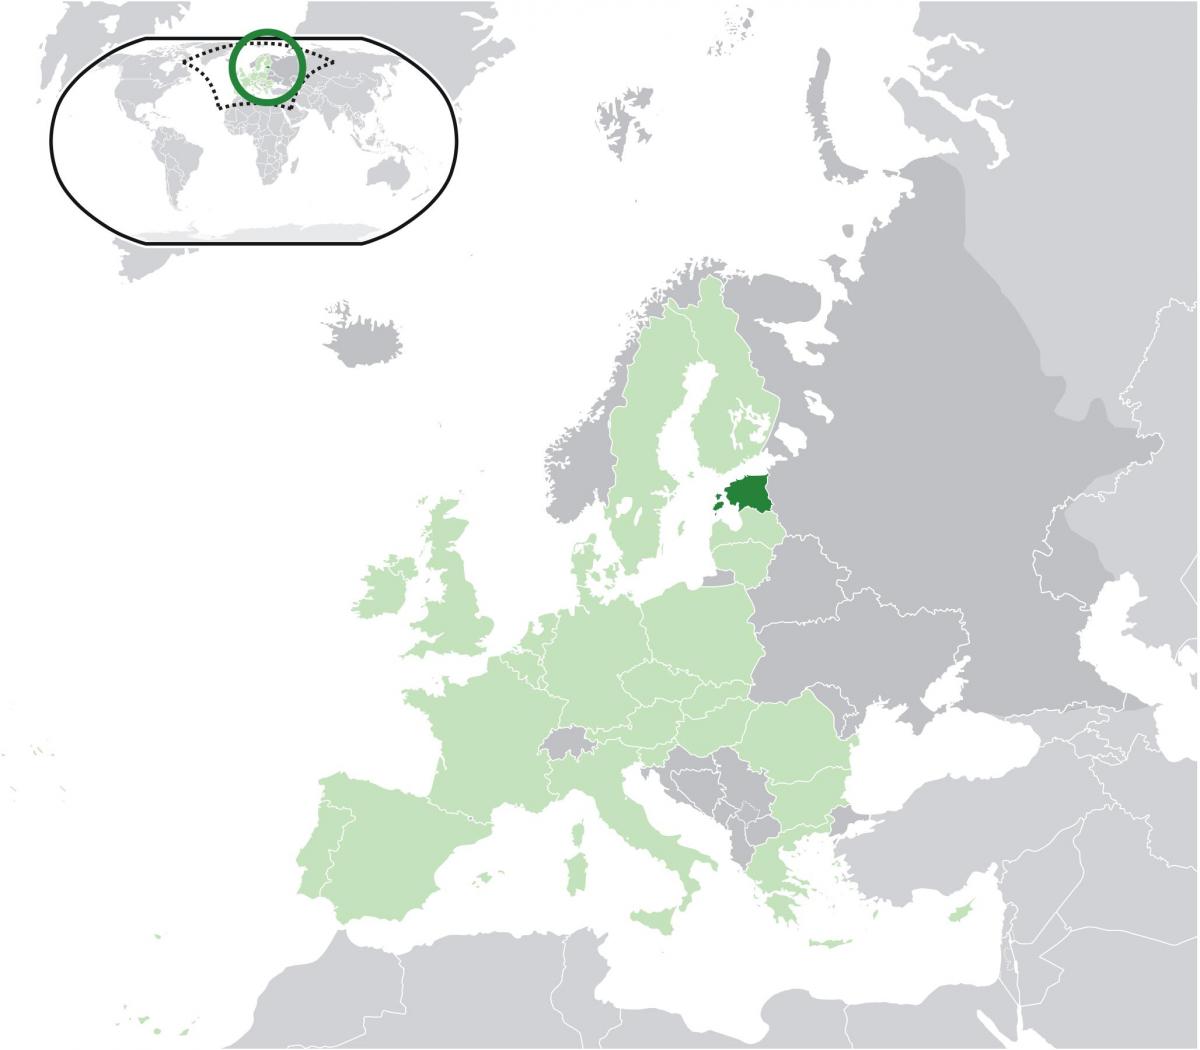 Estland på kartet over europa